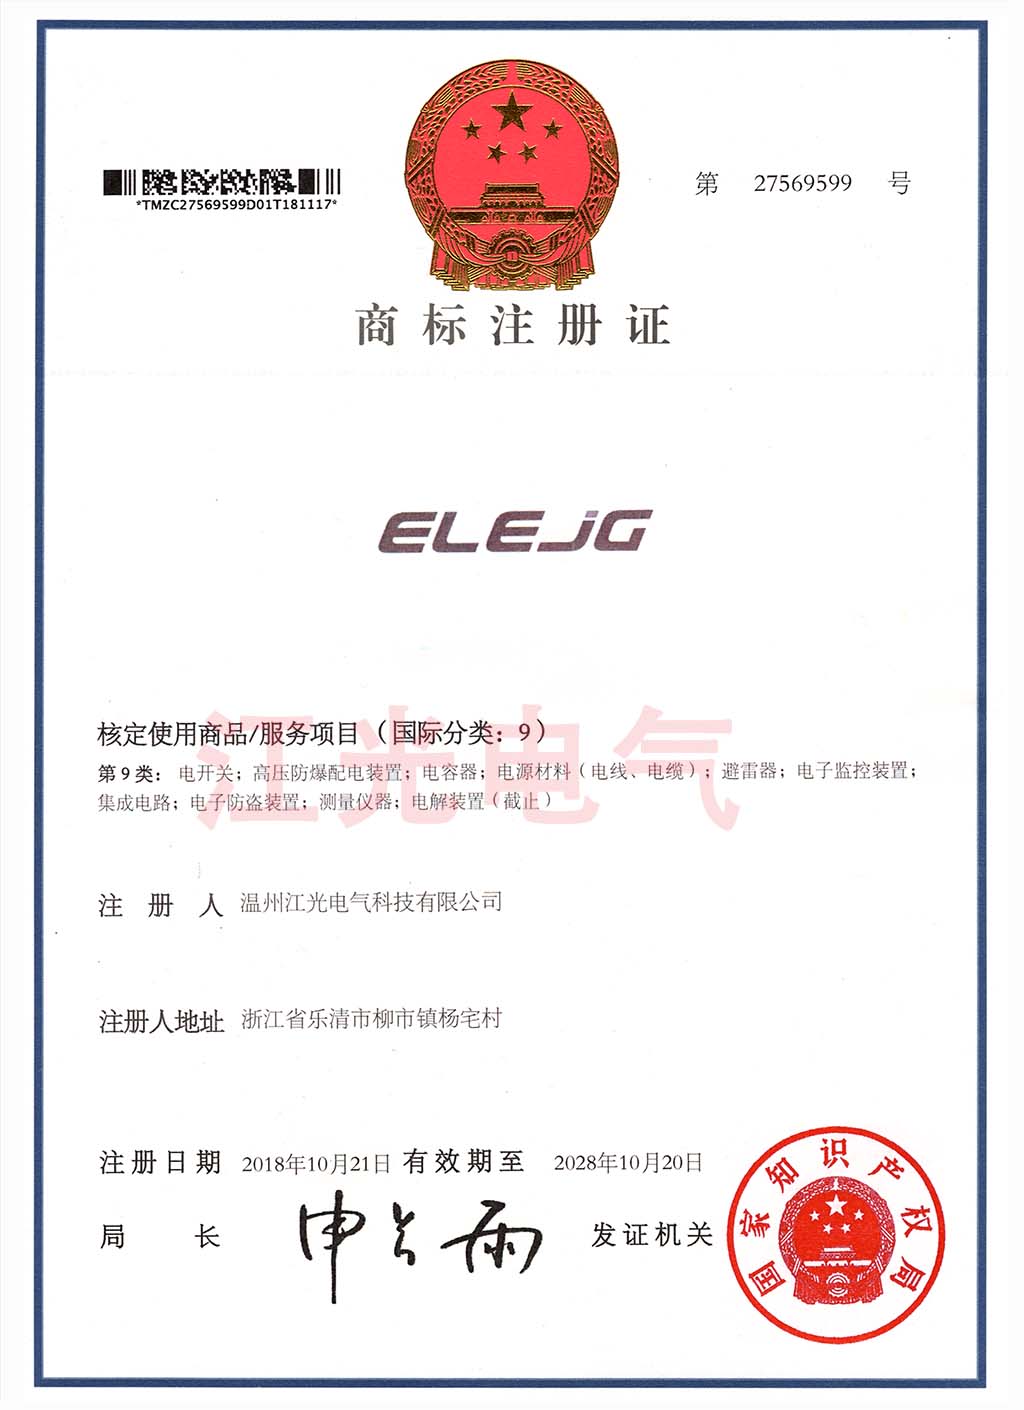 江光电气  公司商标证书 ELEJG